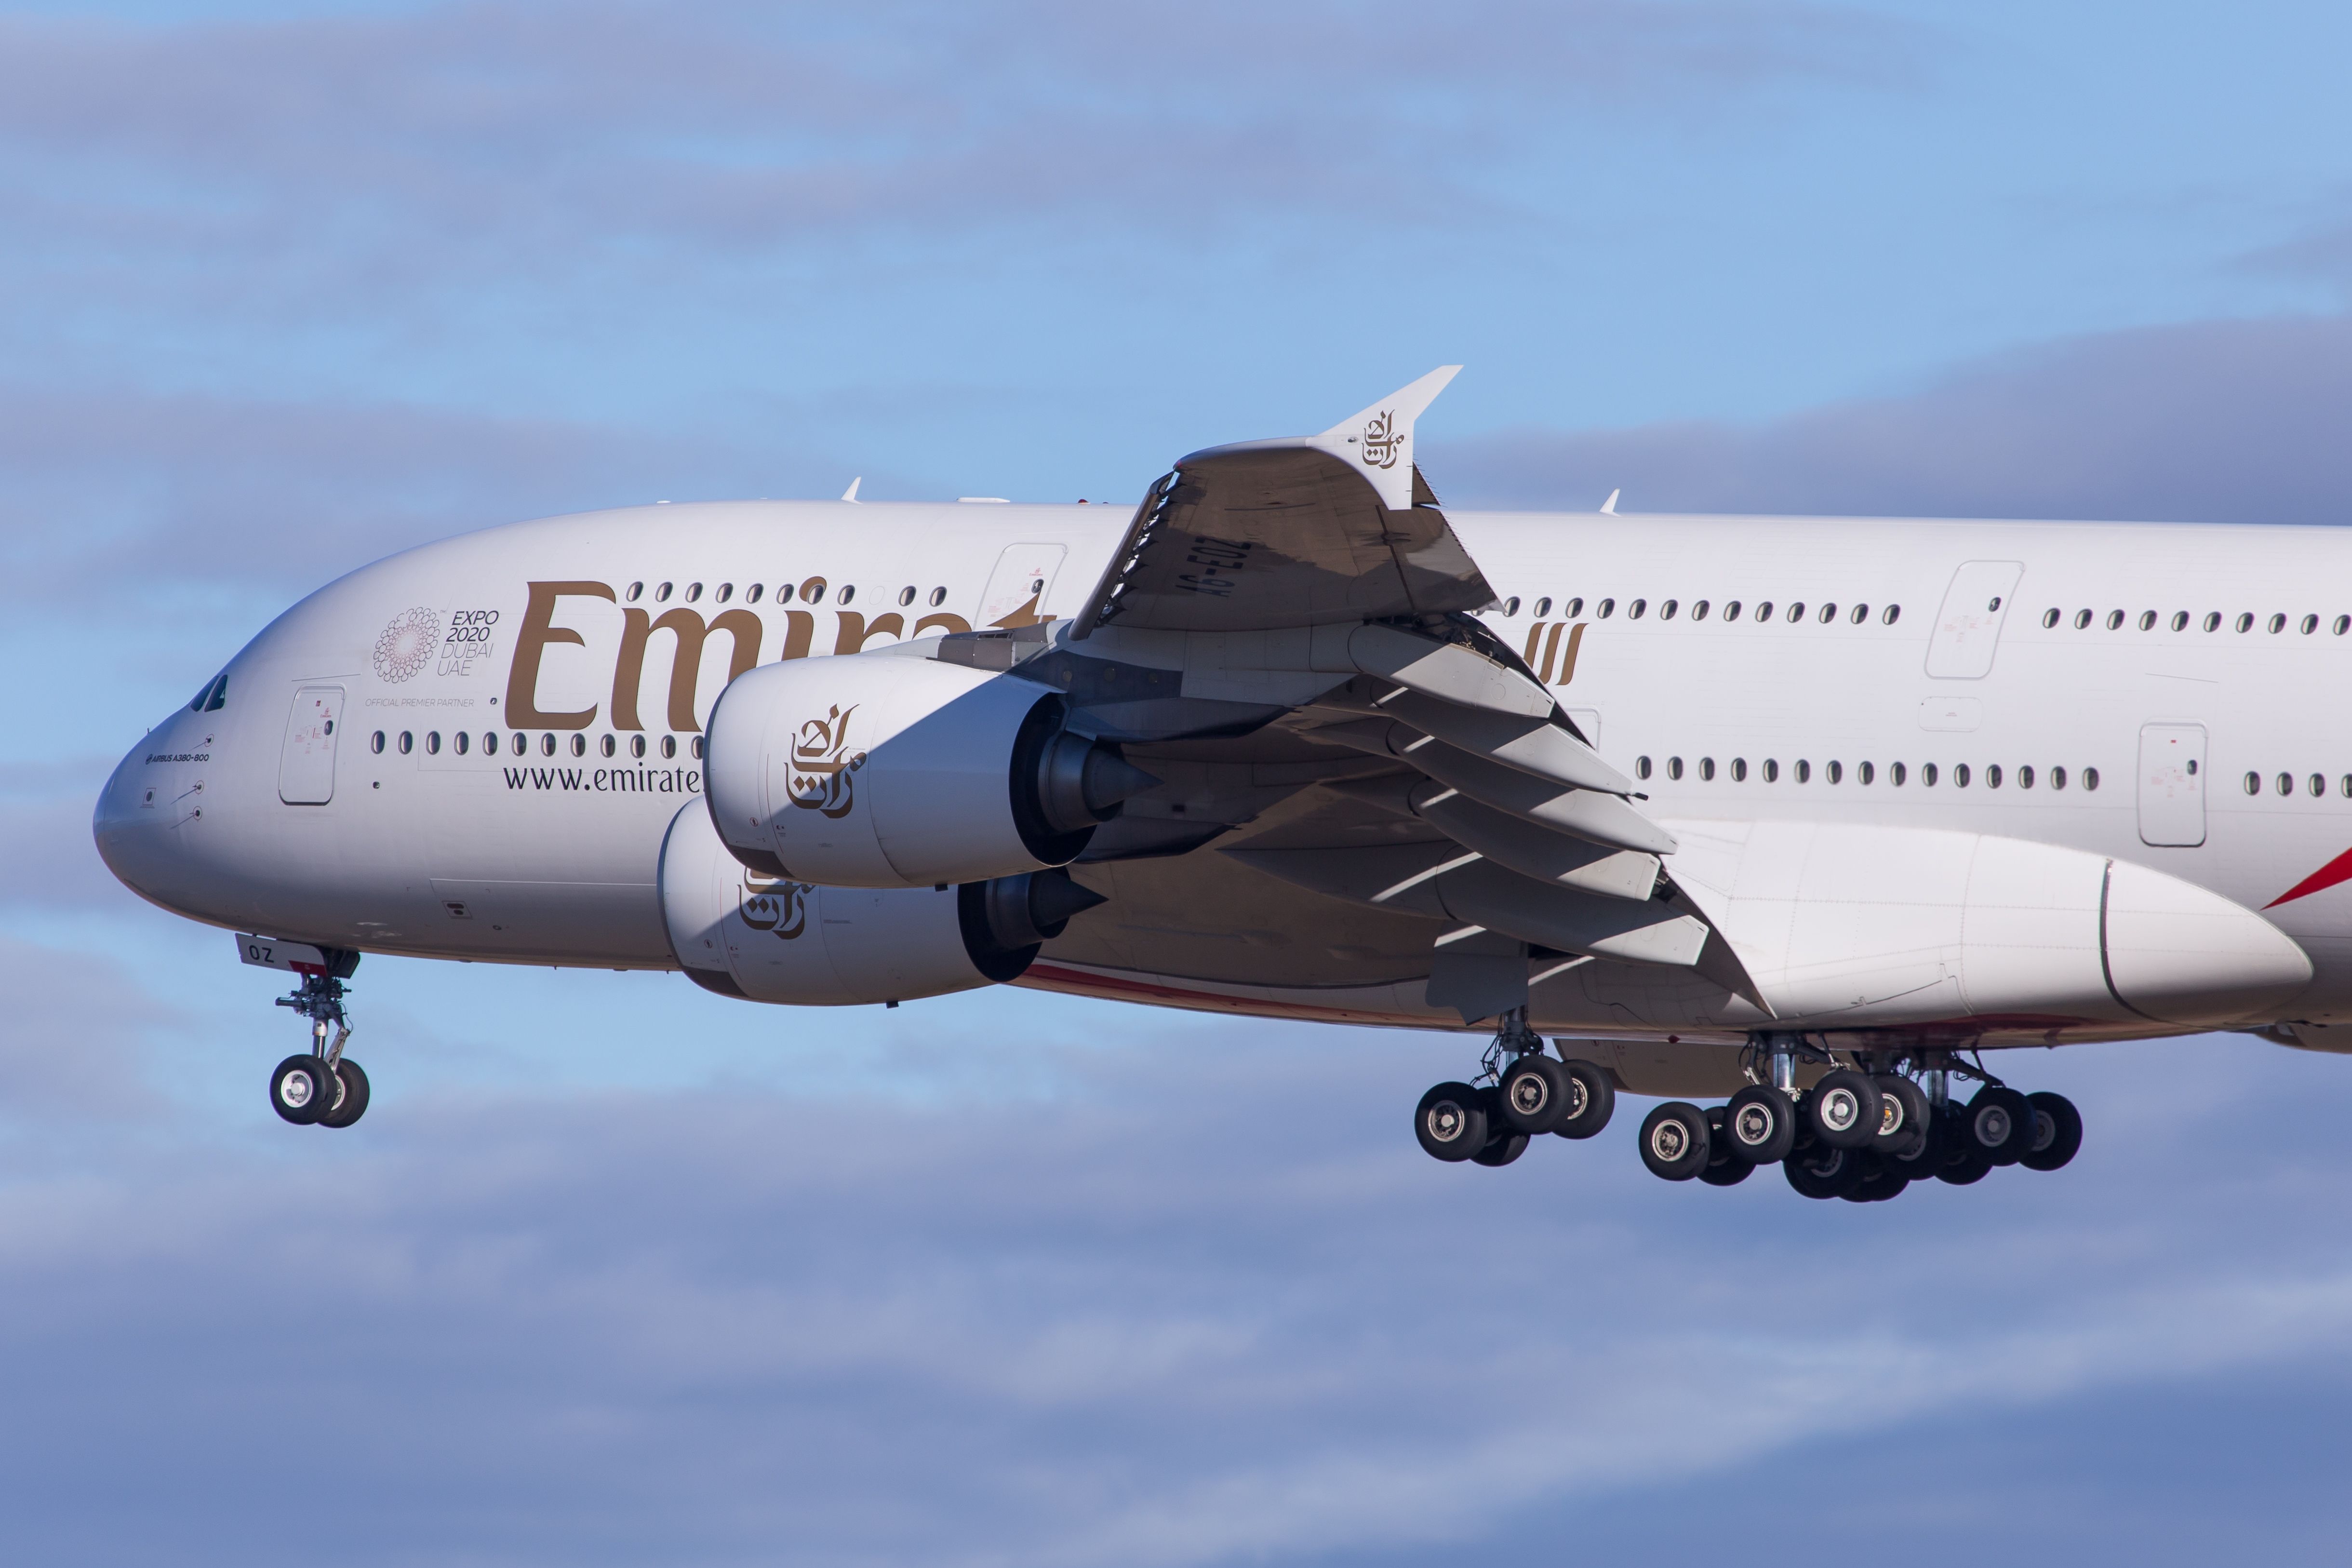 An Emirates A380 on final approach